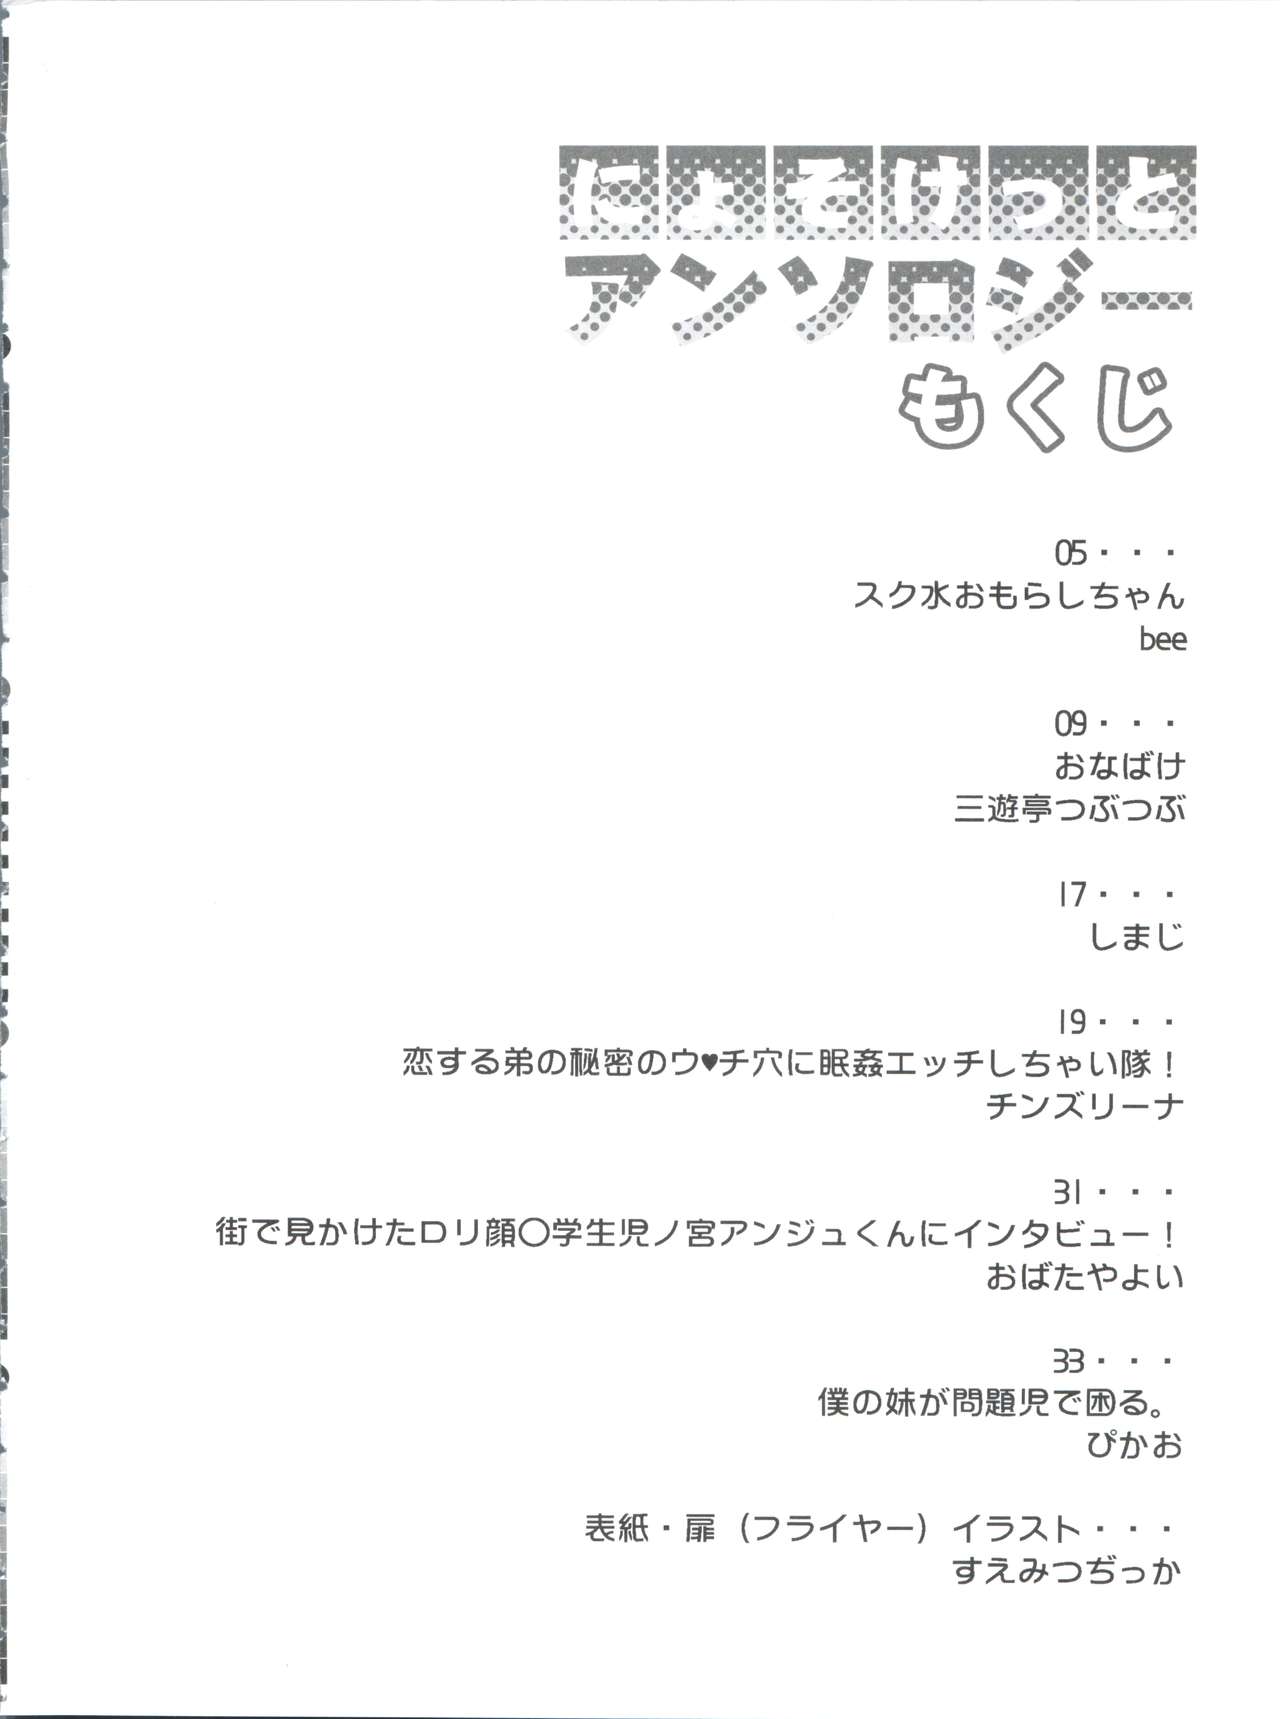 (Nyosoket!) [Scratch Jikkou Iinkai (Various)] Nyosoket Anthology page 4 full